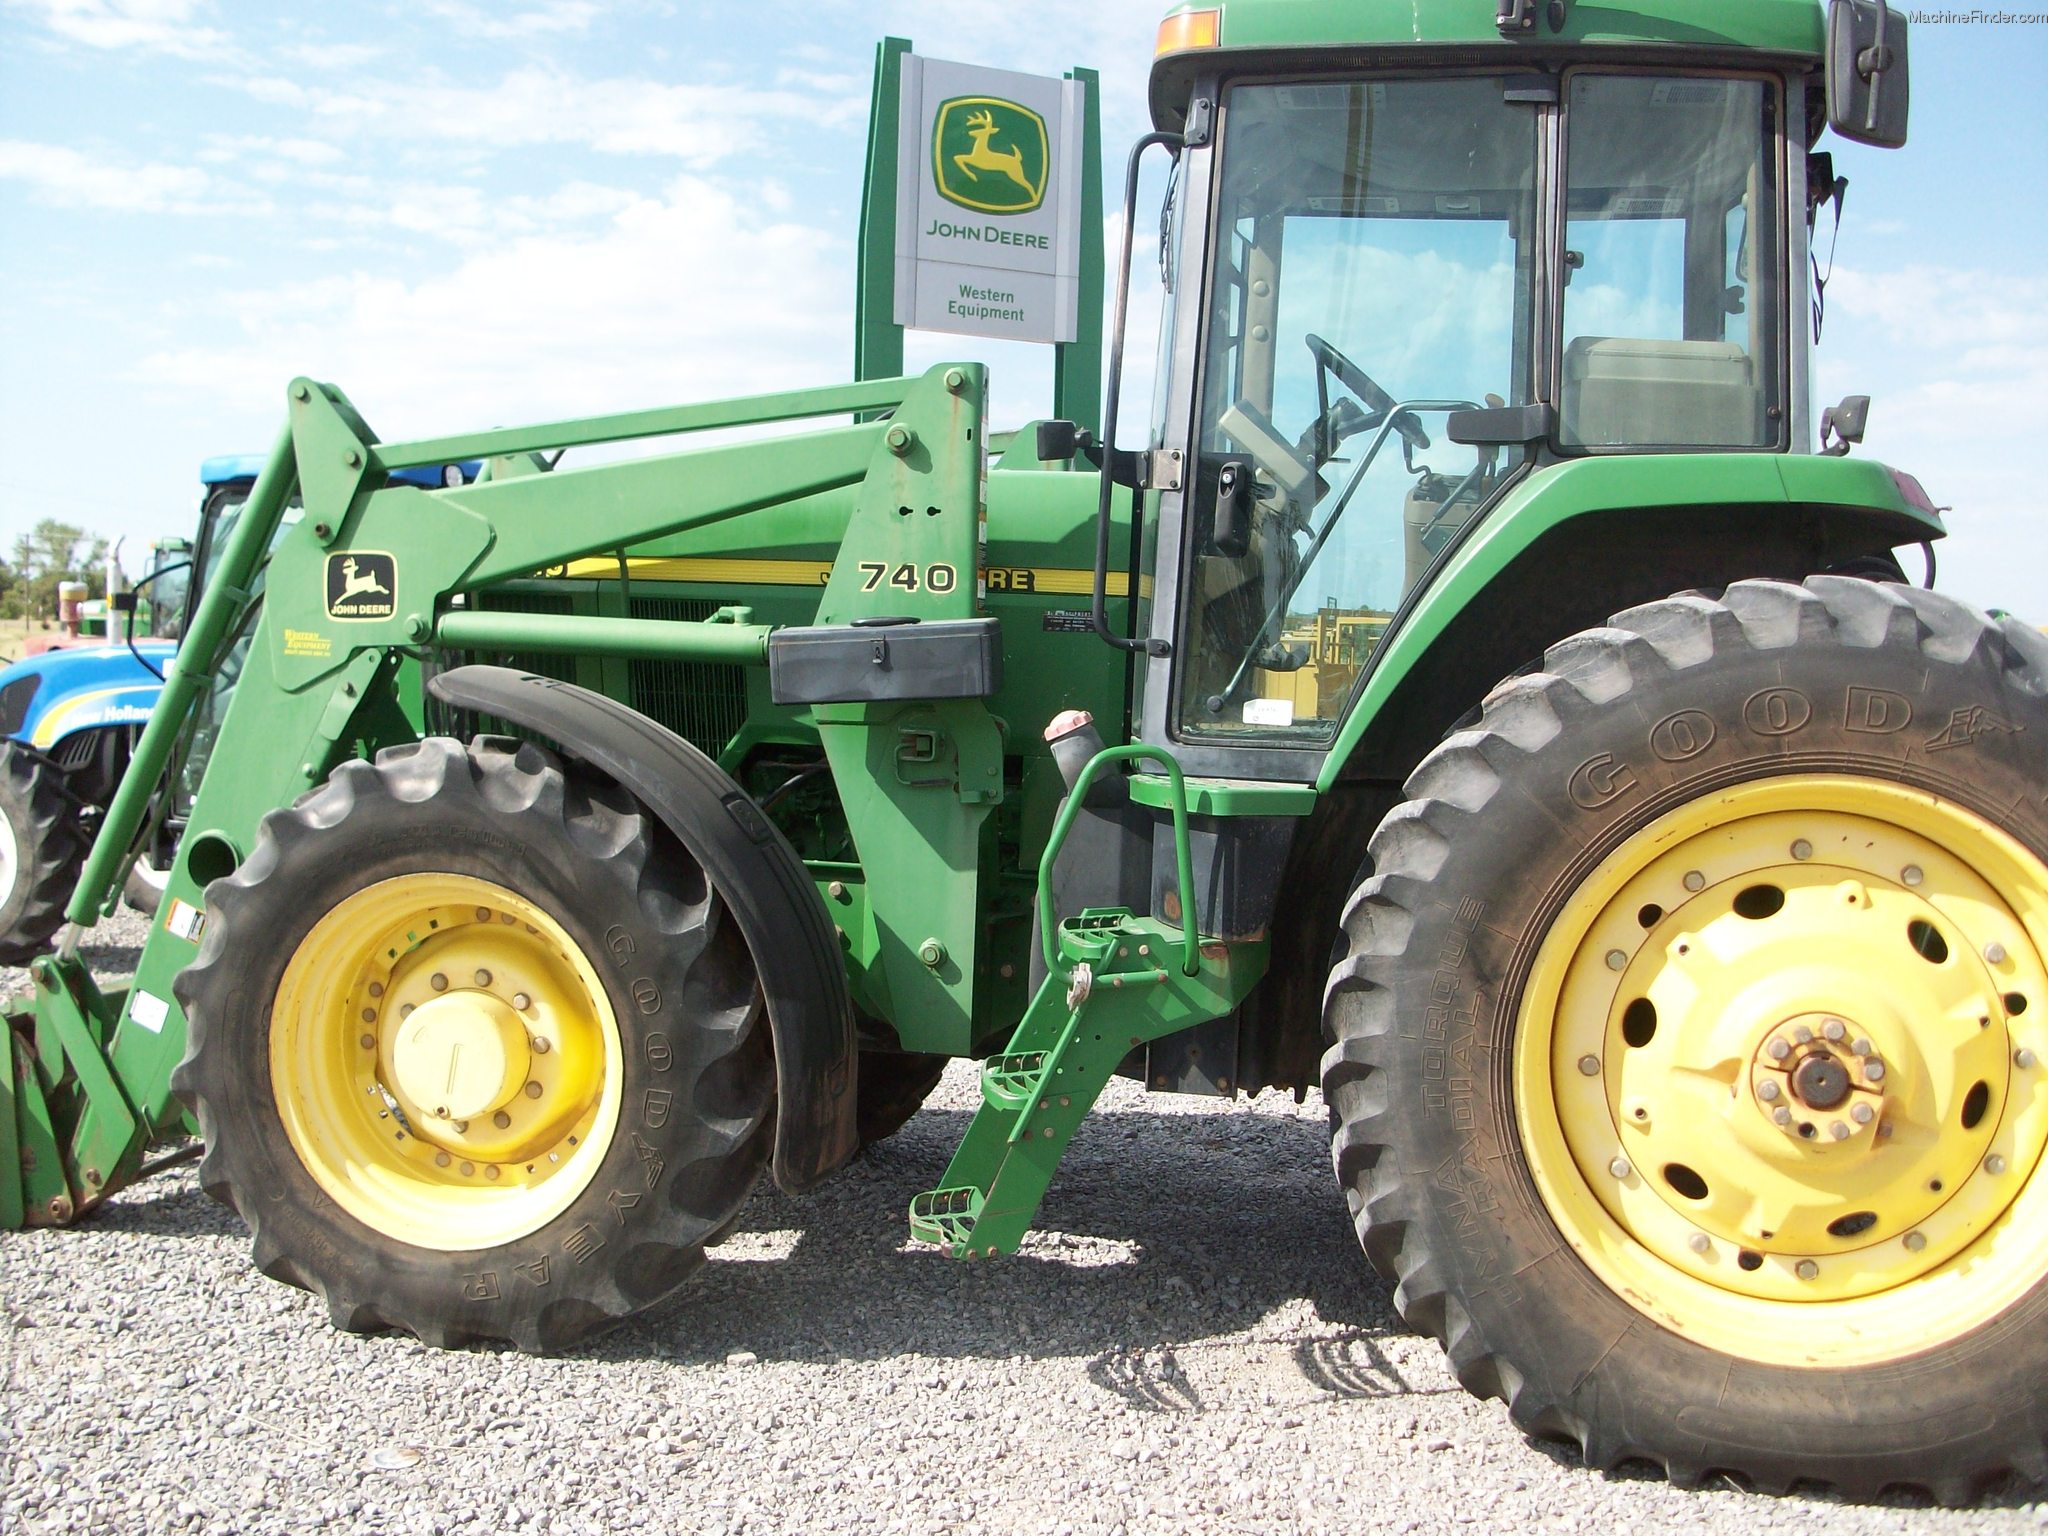 2000 John Deere 7610 Tractors - Row Crop (+100hp) - John Deere ...